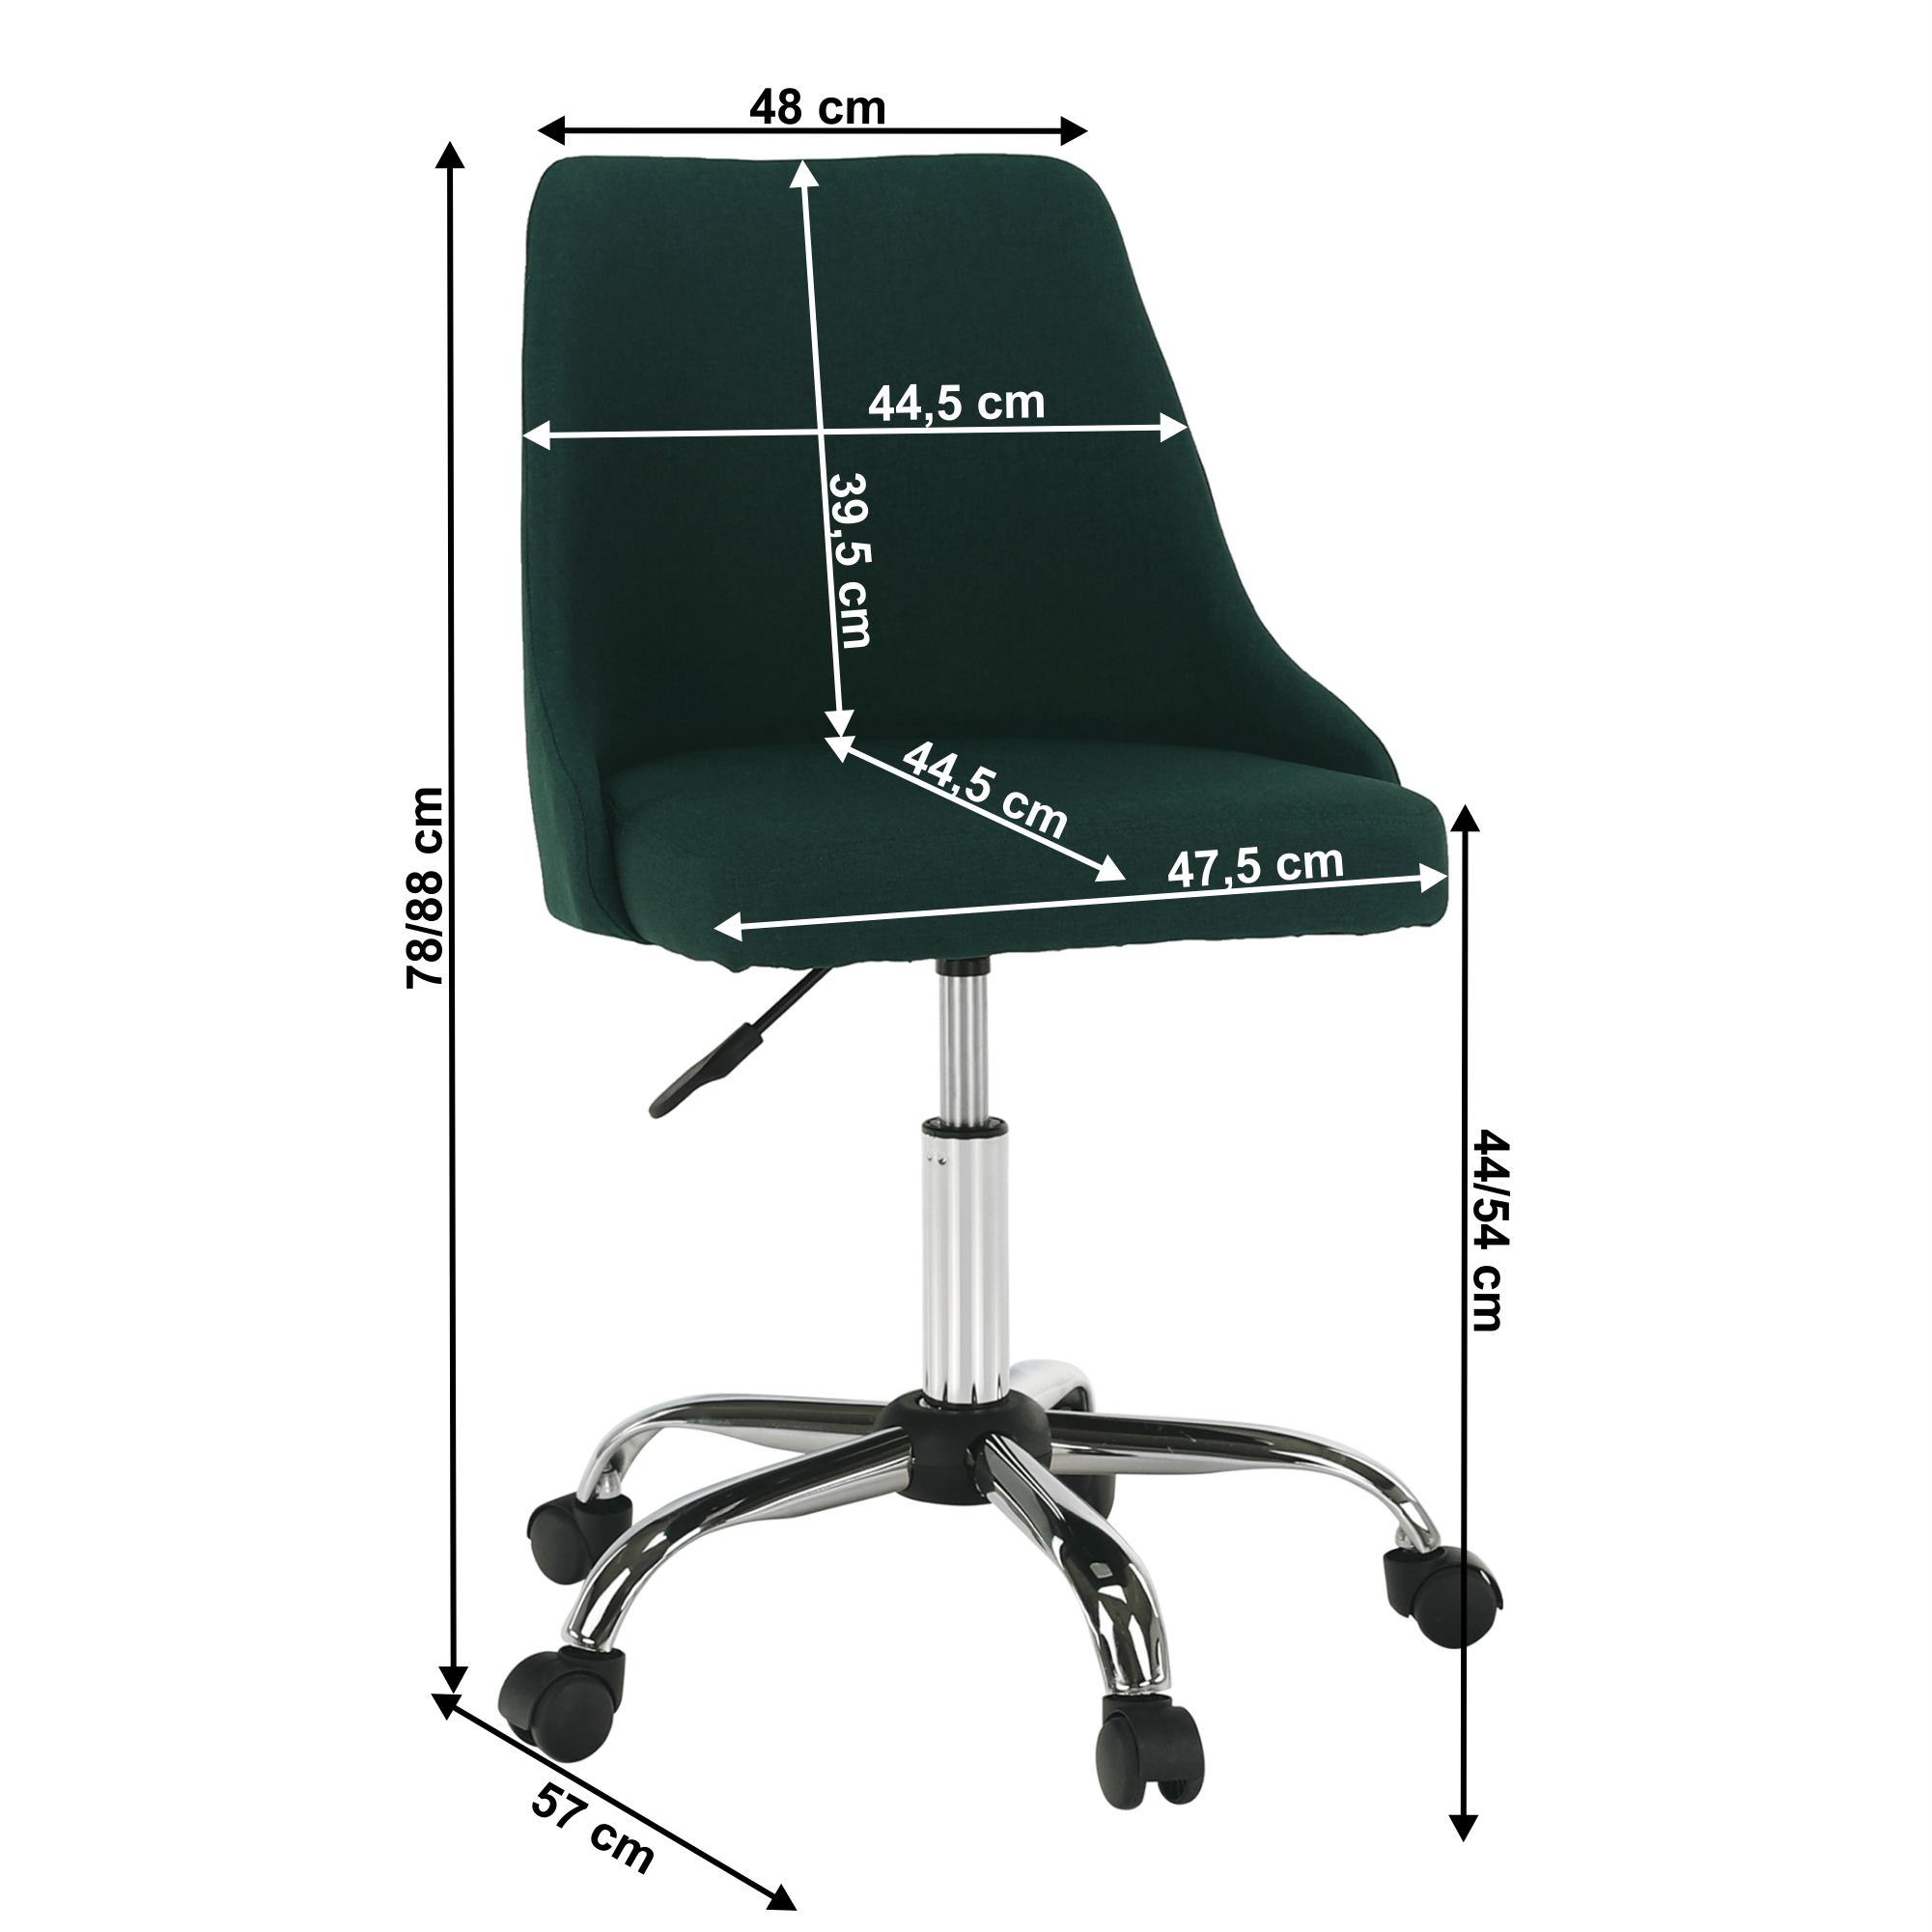 Kancelářská židle, smaragdová/chrom, EDIZ